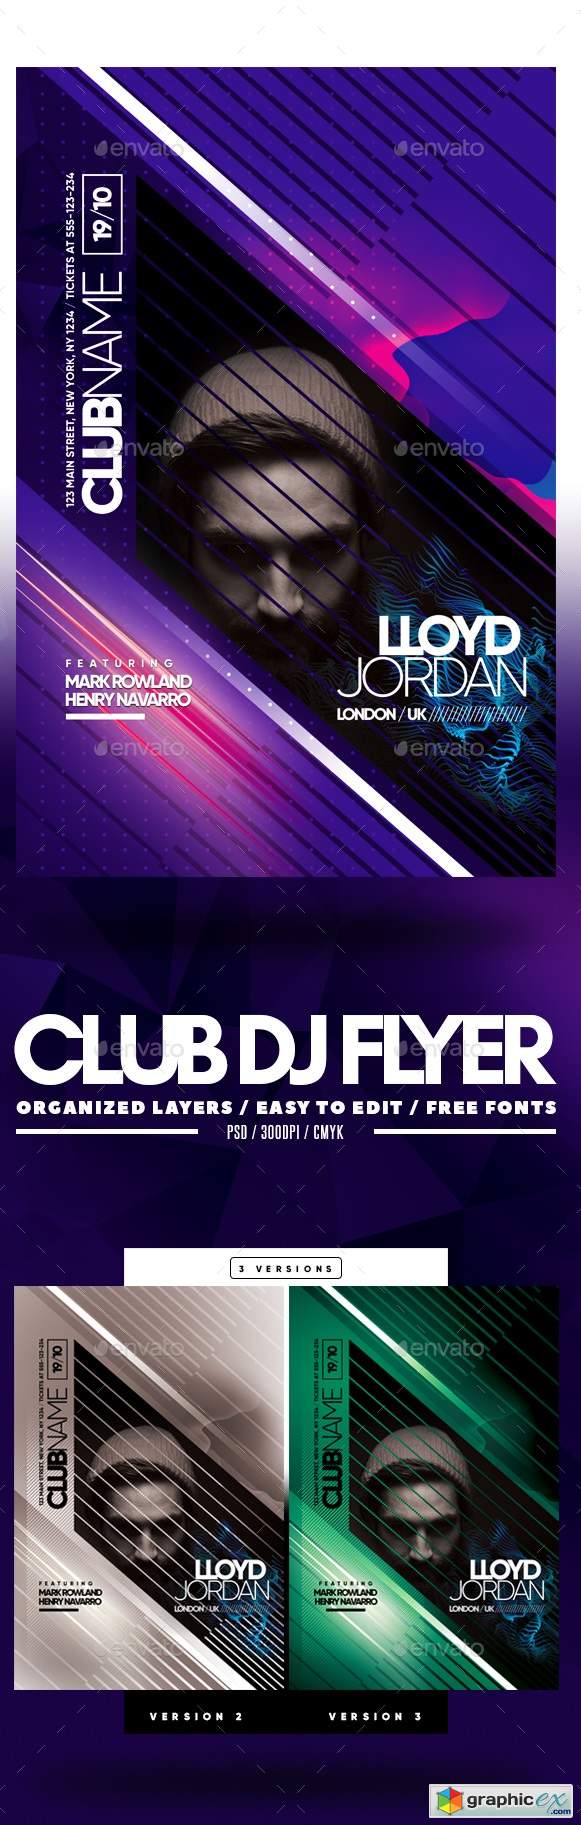 Club DJ Flyer 22689442